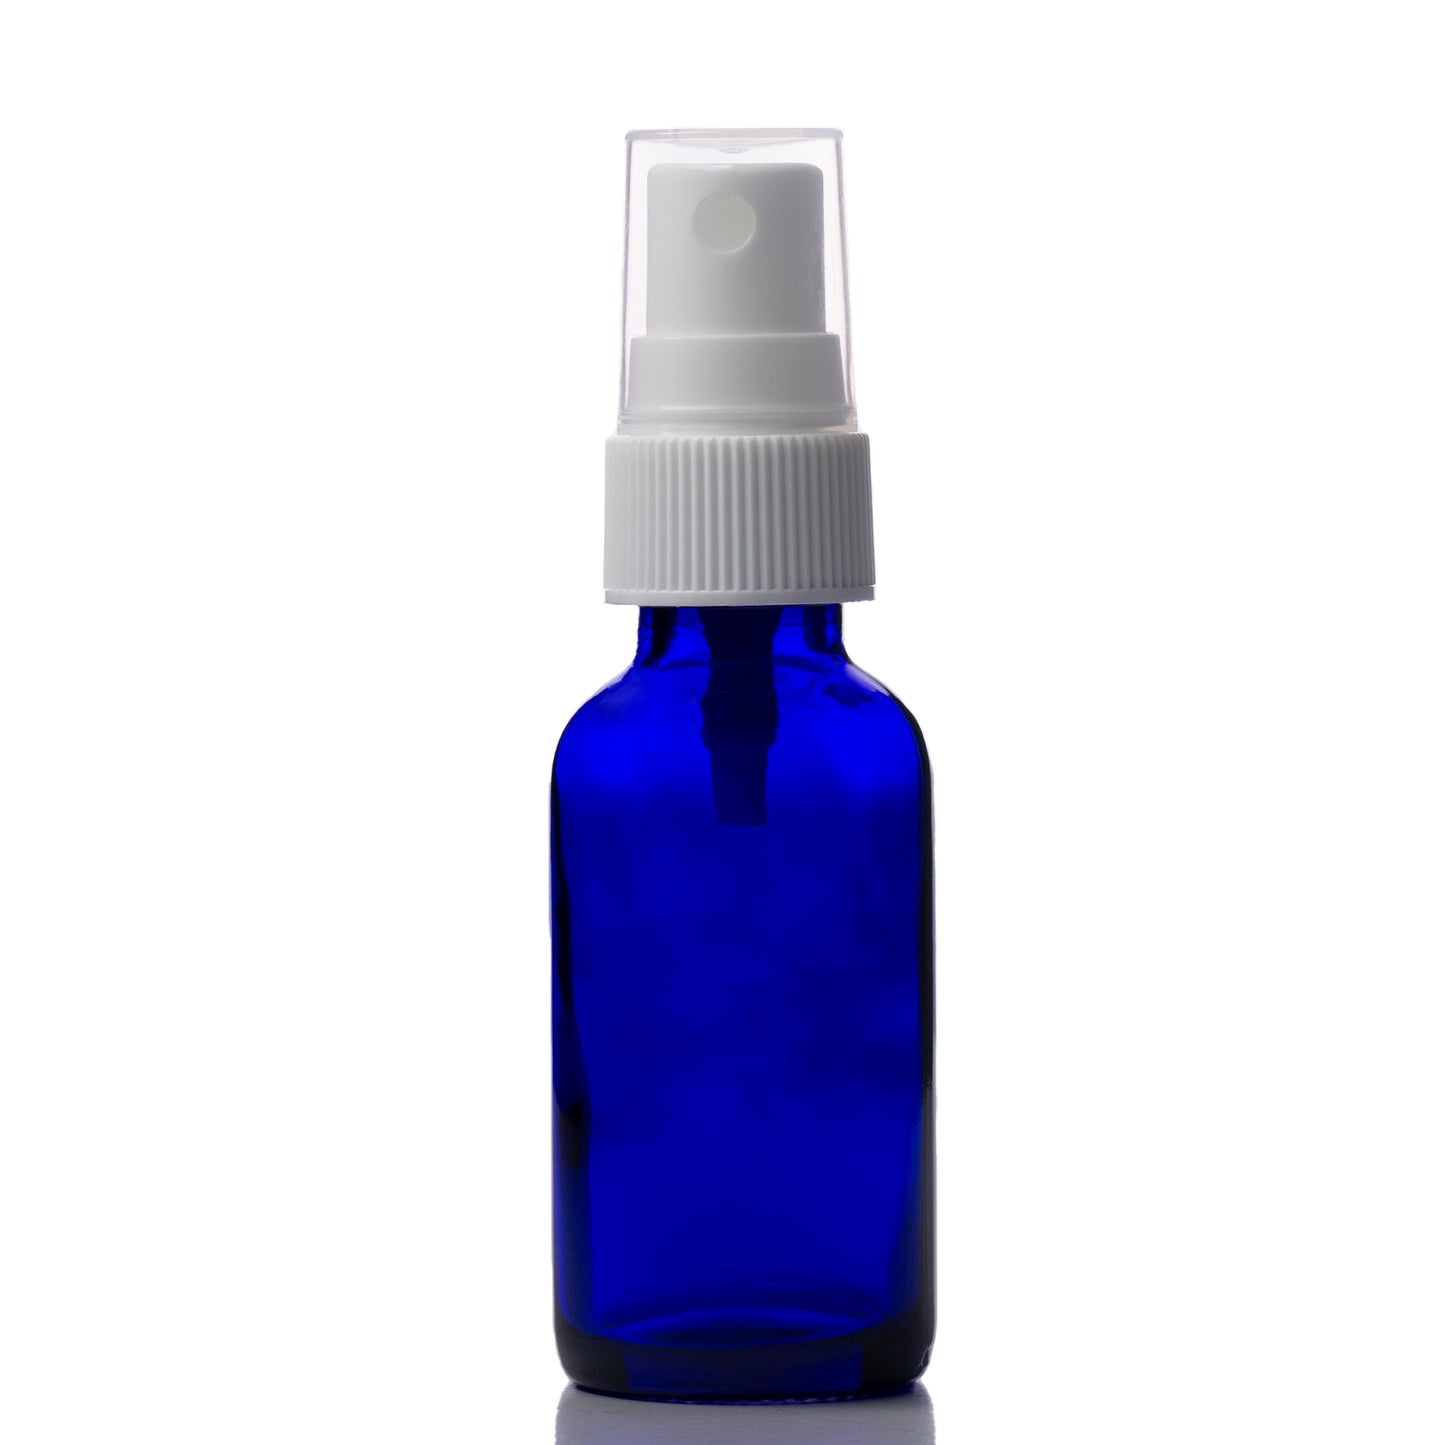 1 oz Blue Glass Boston Round Bottle with 20-400 White Fine Mist Sprayer